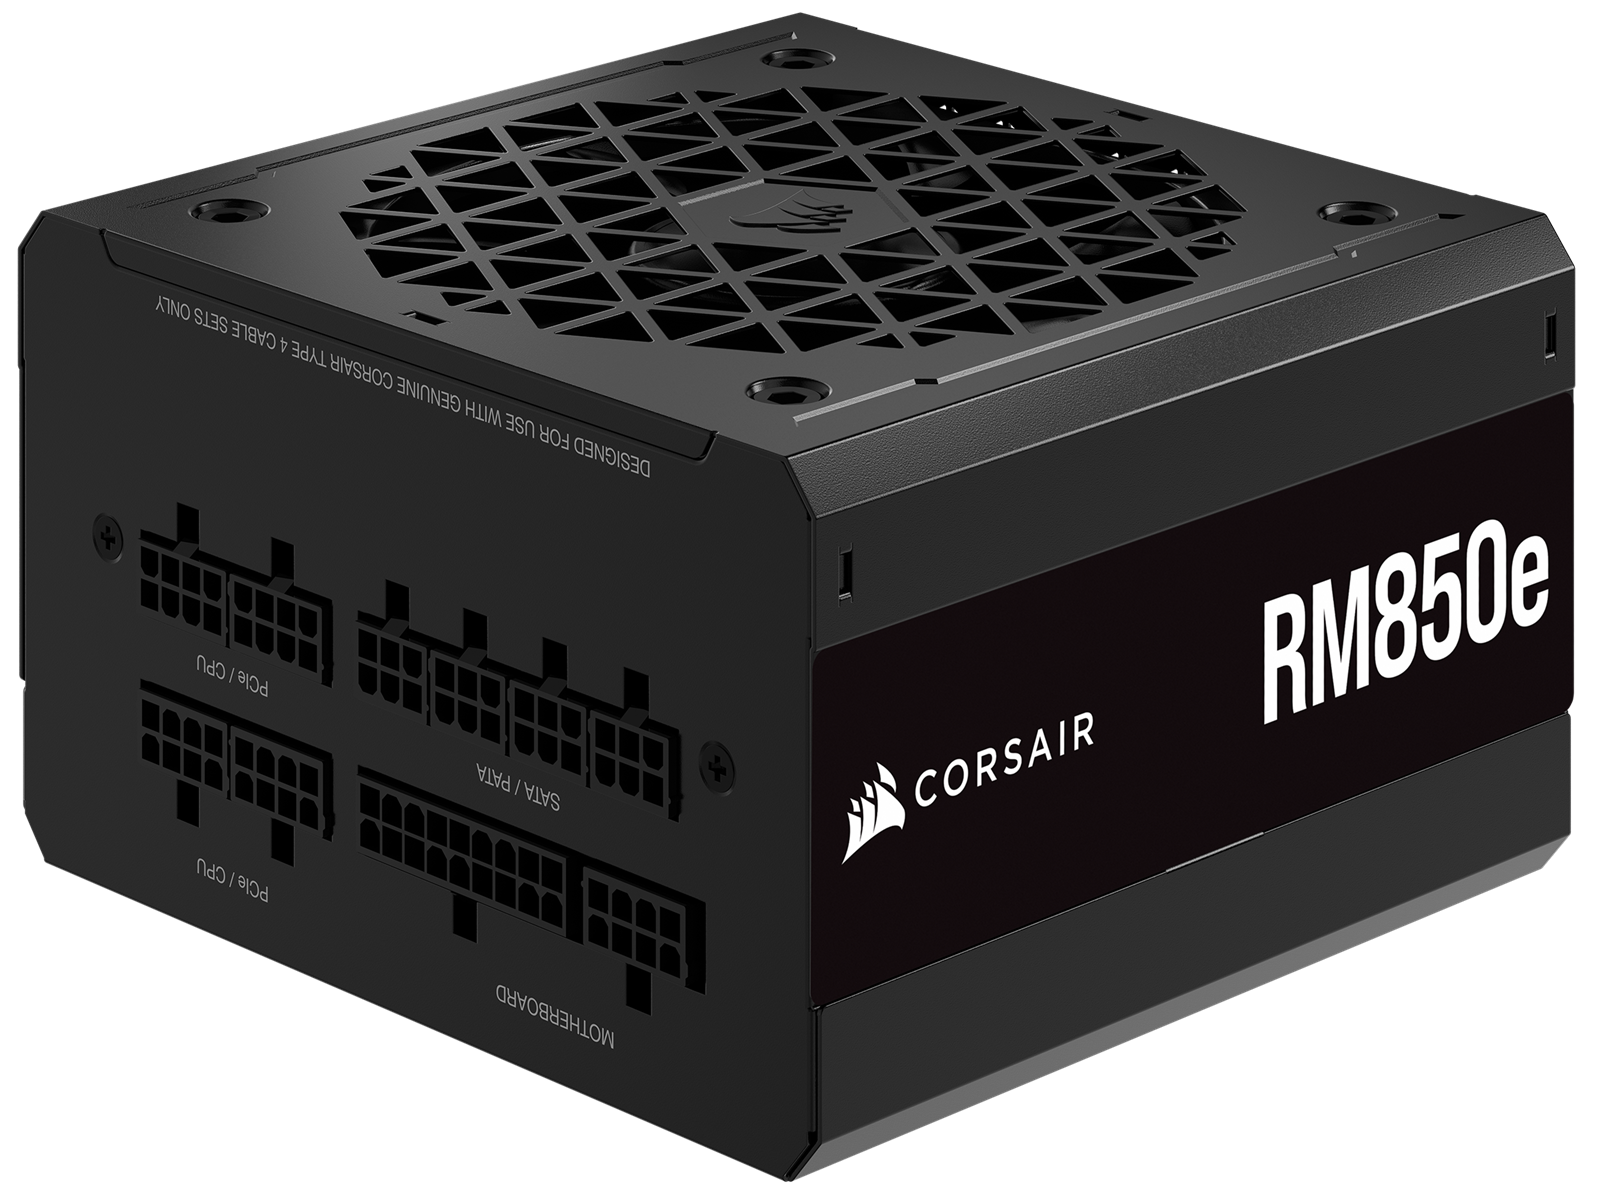 Corsair PSU RM850e V2 - 850W - 80+ Gold ATX 3.0